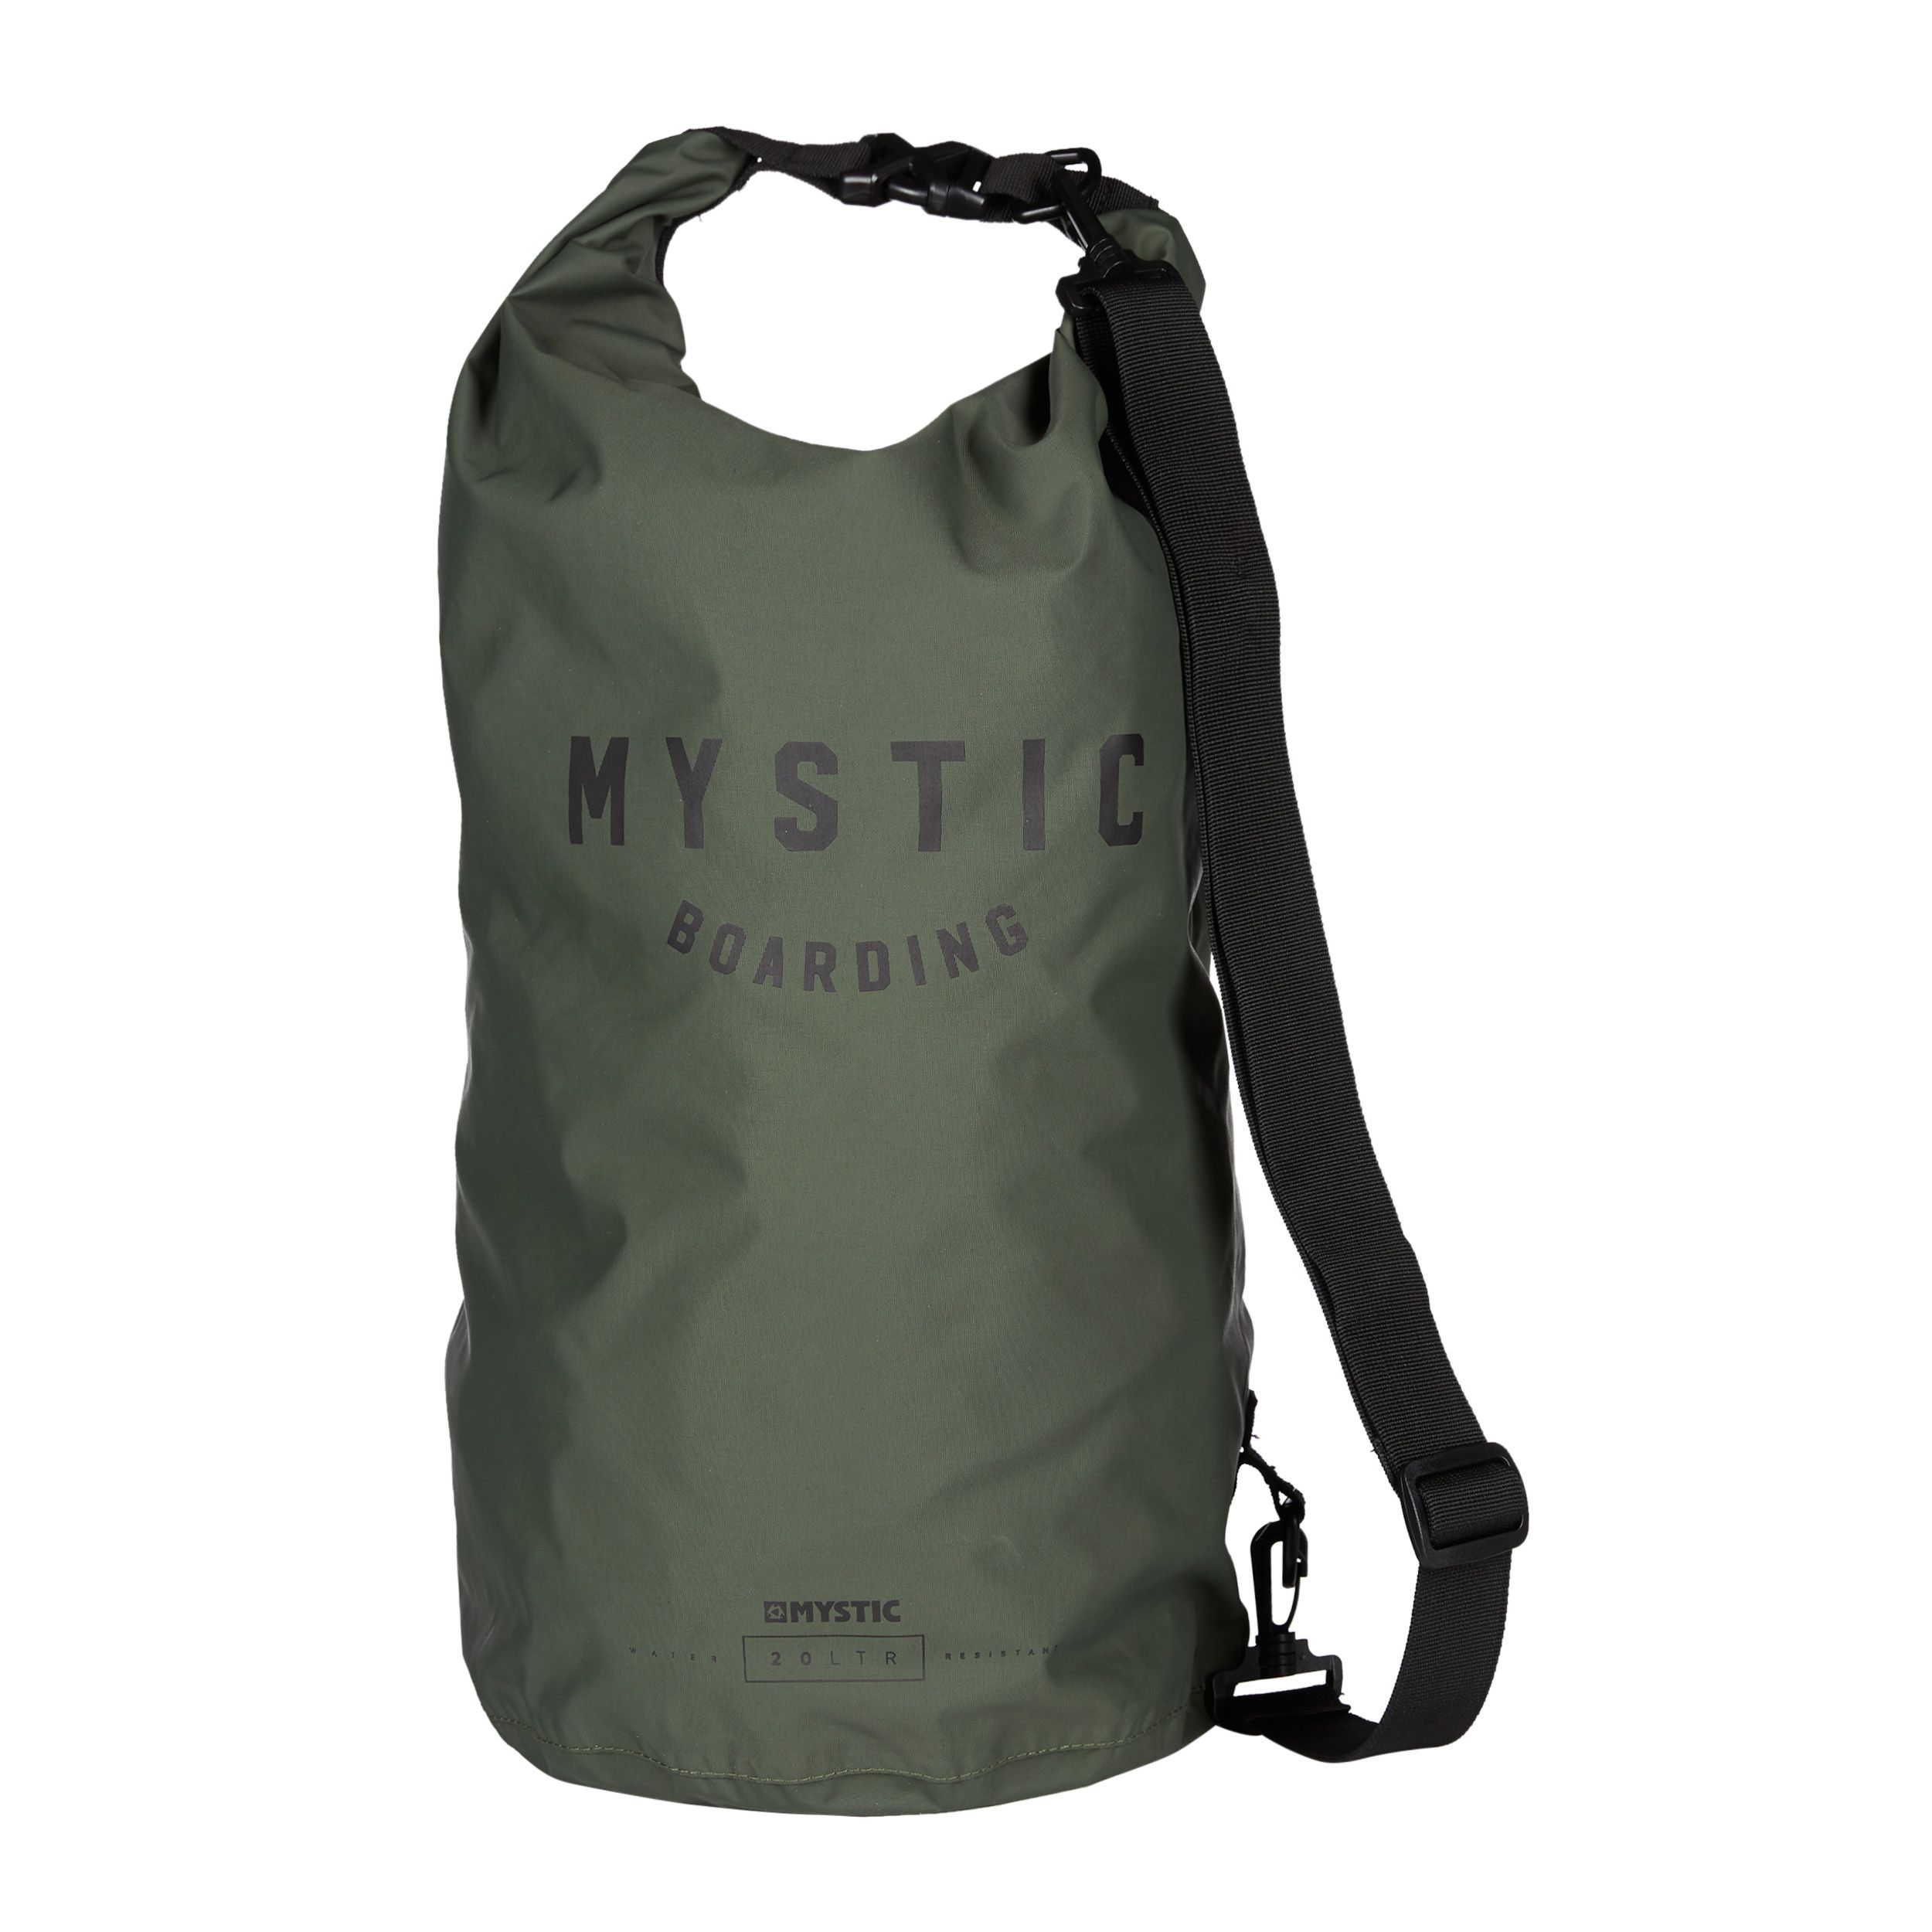 eer kapitalisme Controversieel Mystic Dry Bag online kopen?